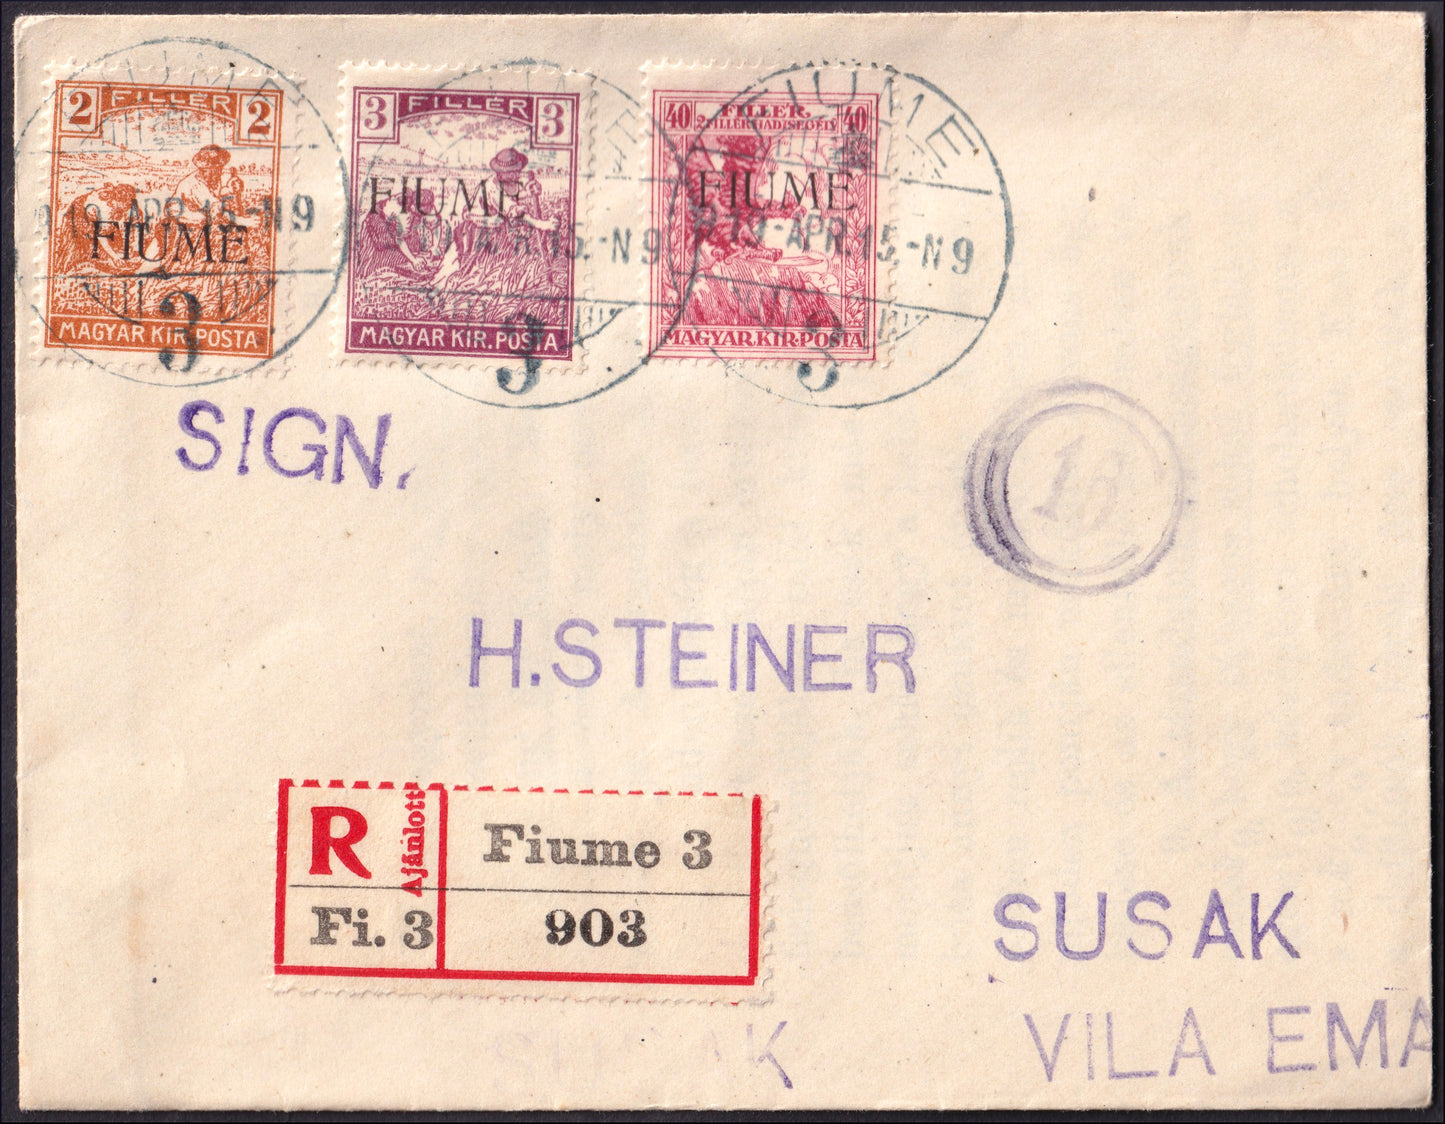 FiumeSP23 - 1918 - Carta estampada con máquina húngara sobreimpresión benéfica 40 (+2) masilla carmín + segadores 2 masilla + 3 masilla (1A+4+5)